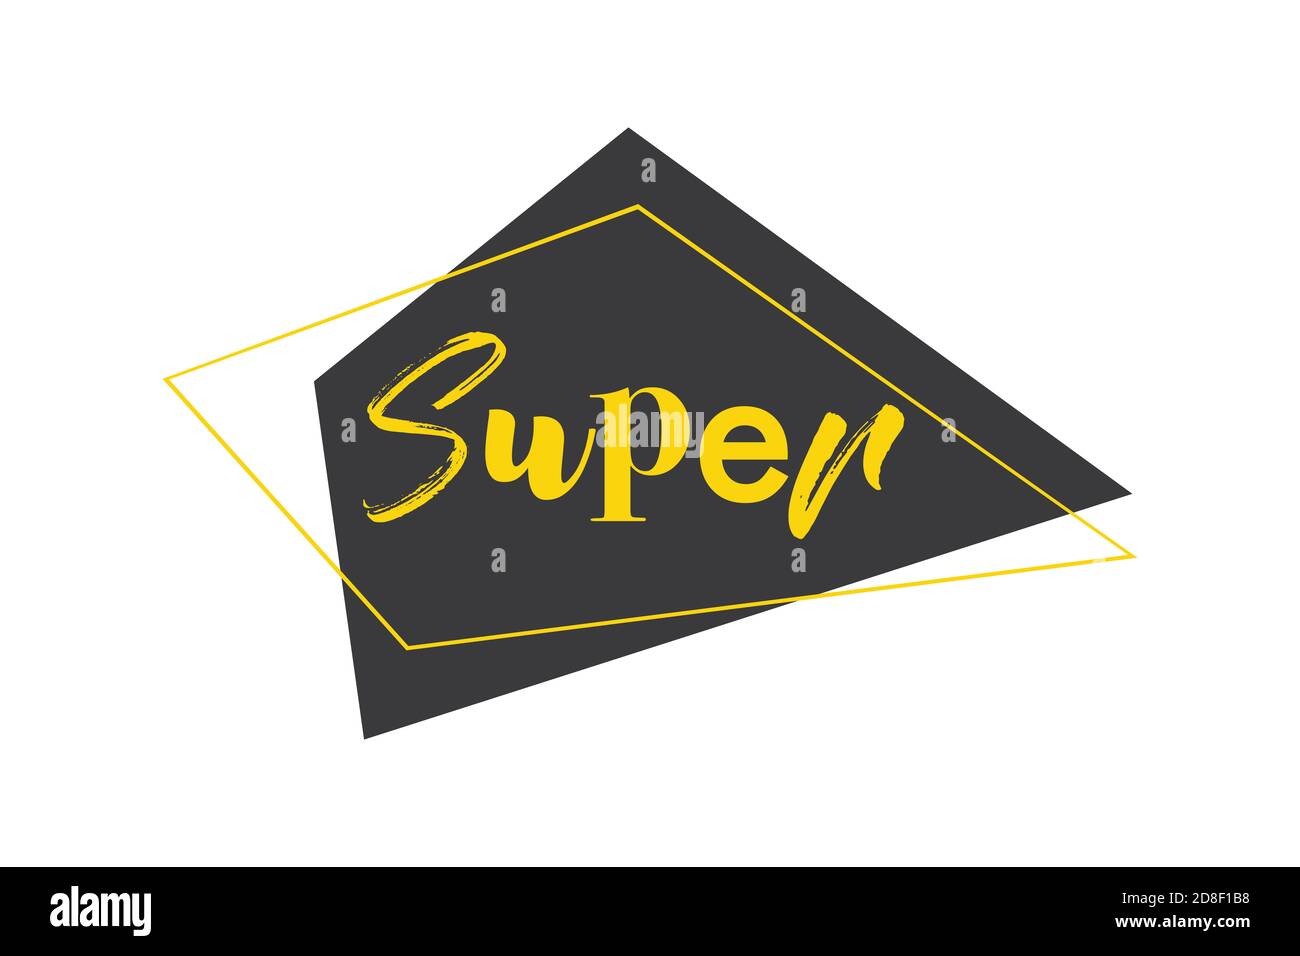 Design graphique moderne, audacieux et vibrant du mot « Super » avec des formes géométriques trapézoïdales aux couleurs jaune et grise. Typogra amusant, expérimental et ludique Banque D'Images